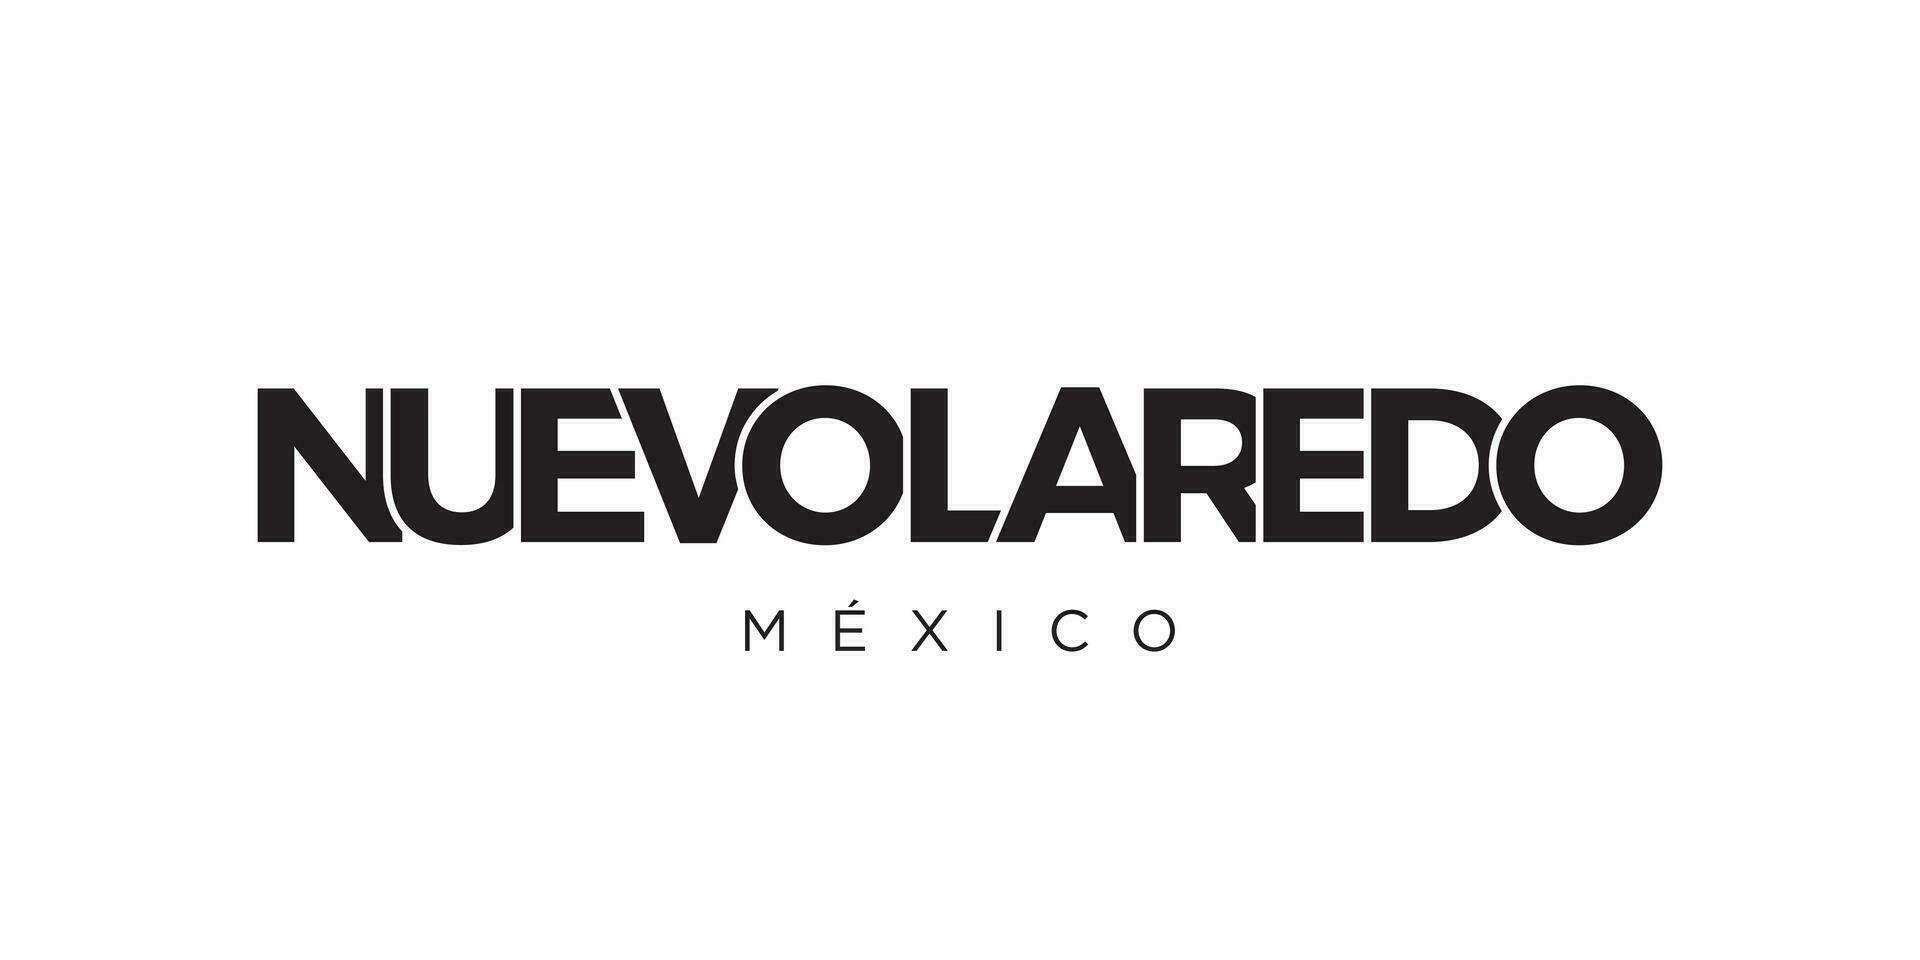 nuevo laredo dans le Mexique emblème. le conception Caractéristiques une géométrique style, vecteur illustration avec audacieux typographie dans une moderne Police de caractère. le graphique slogan caractères.